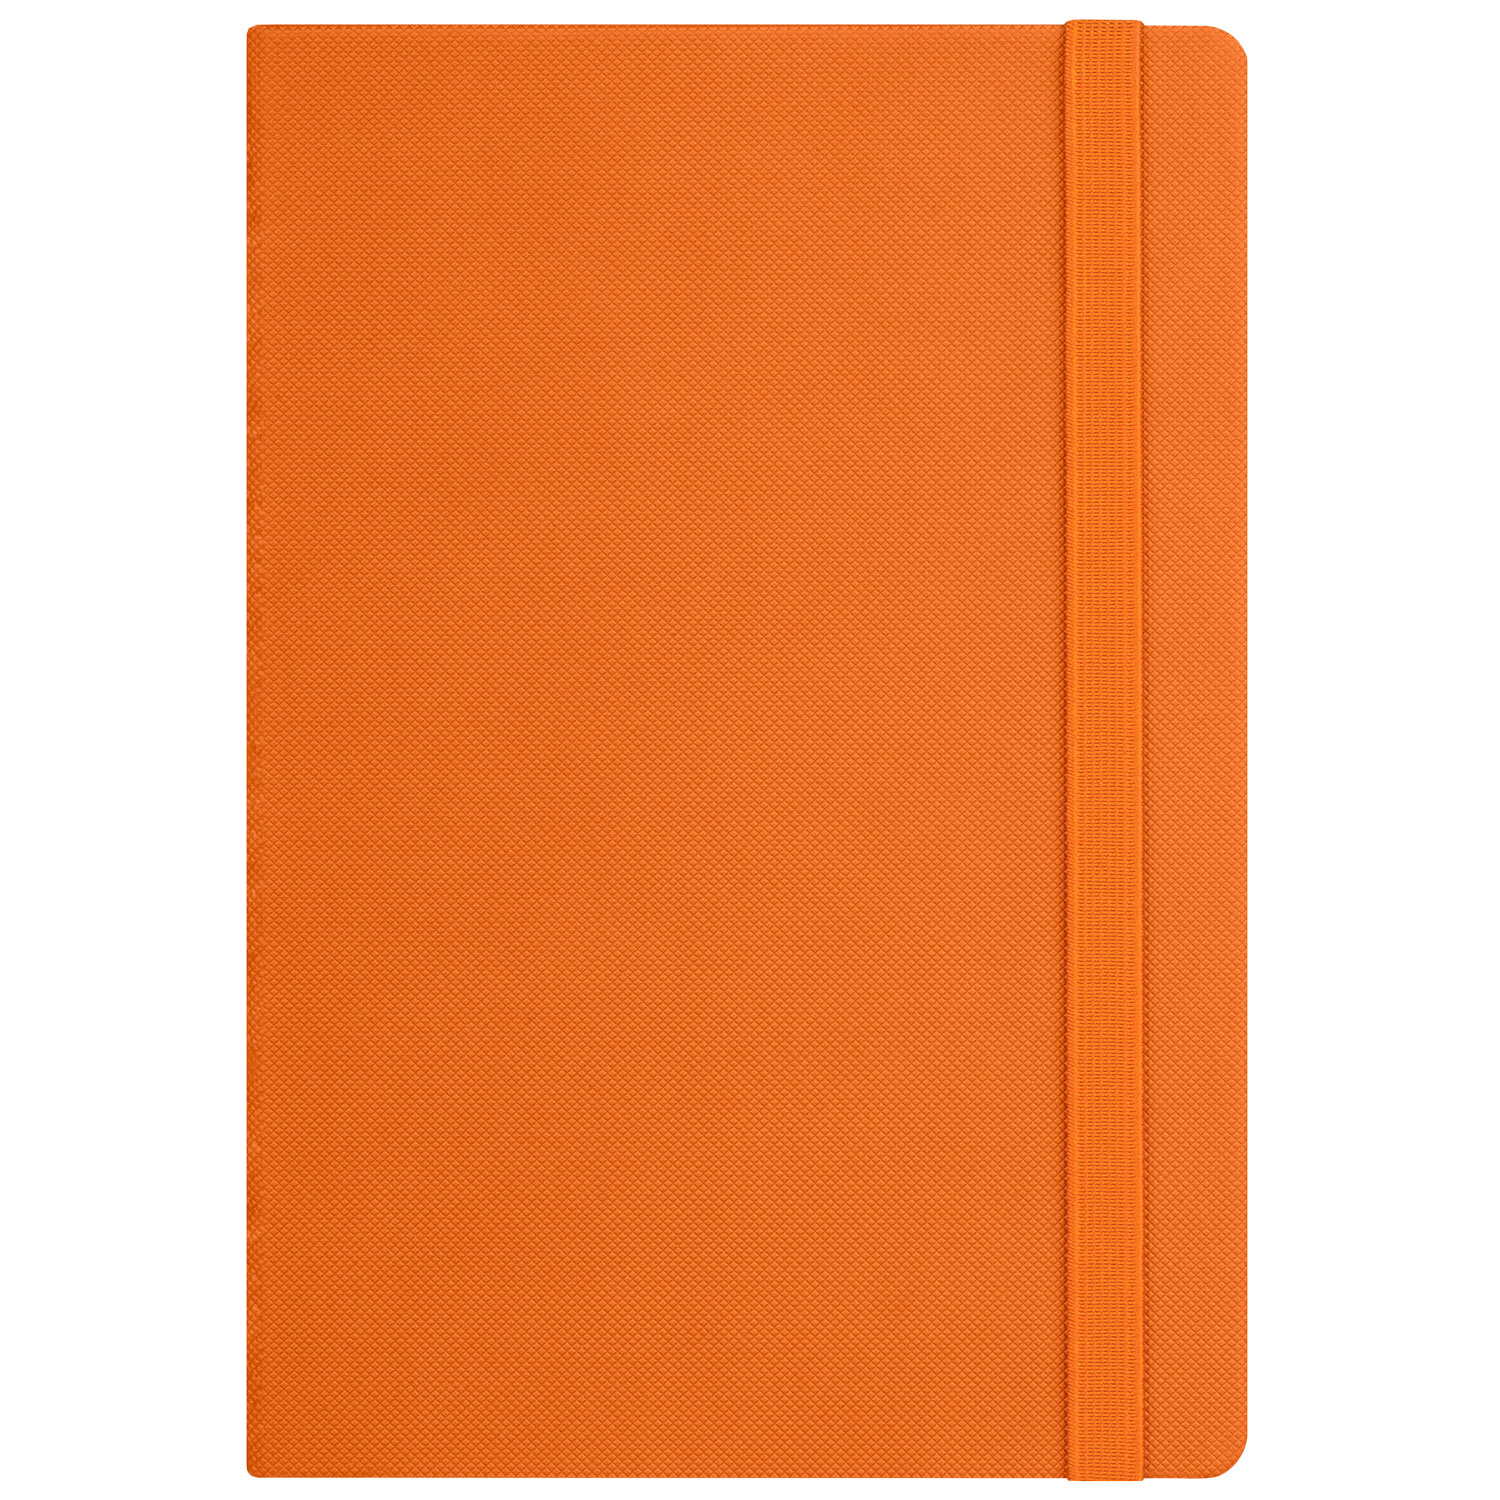 Ежедневник Canyon Btobook недатированный, оранжевый (без упаковки, без стикера)